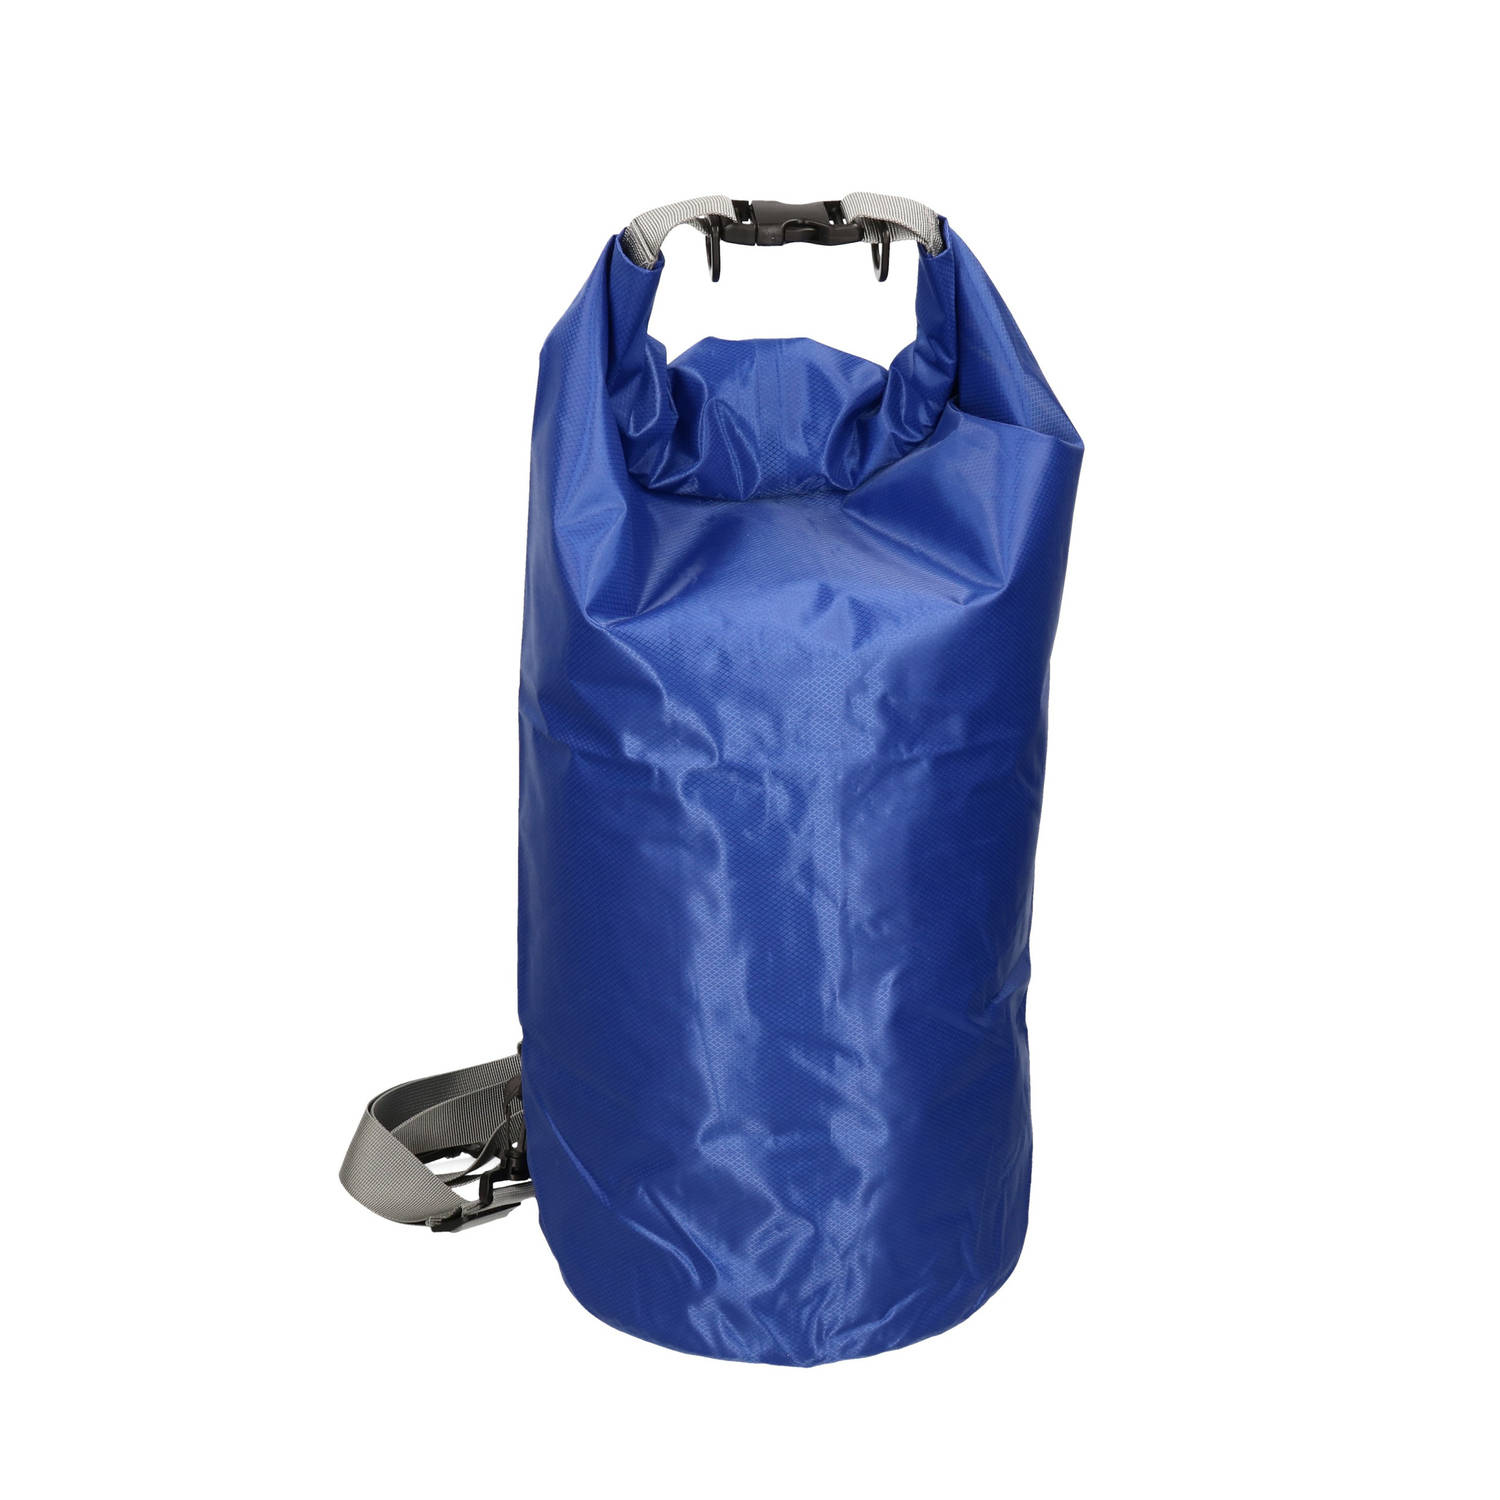 Waterdichte duffel bag/plunjezak 20 liter blauw - Reistas (volwassen)